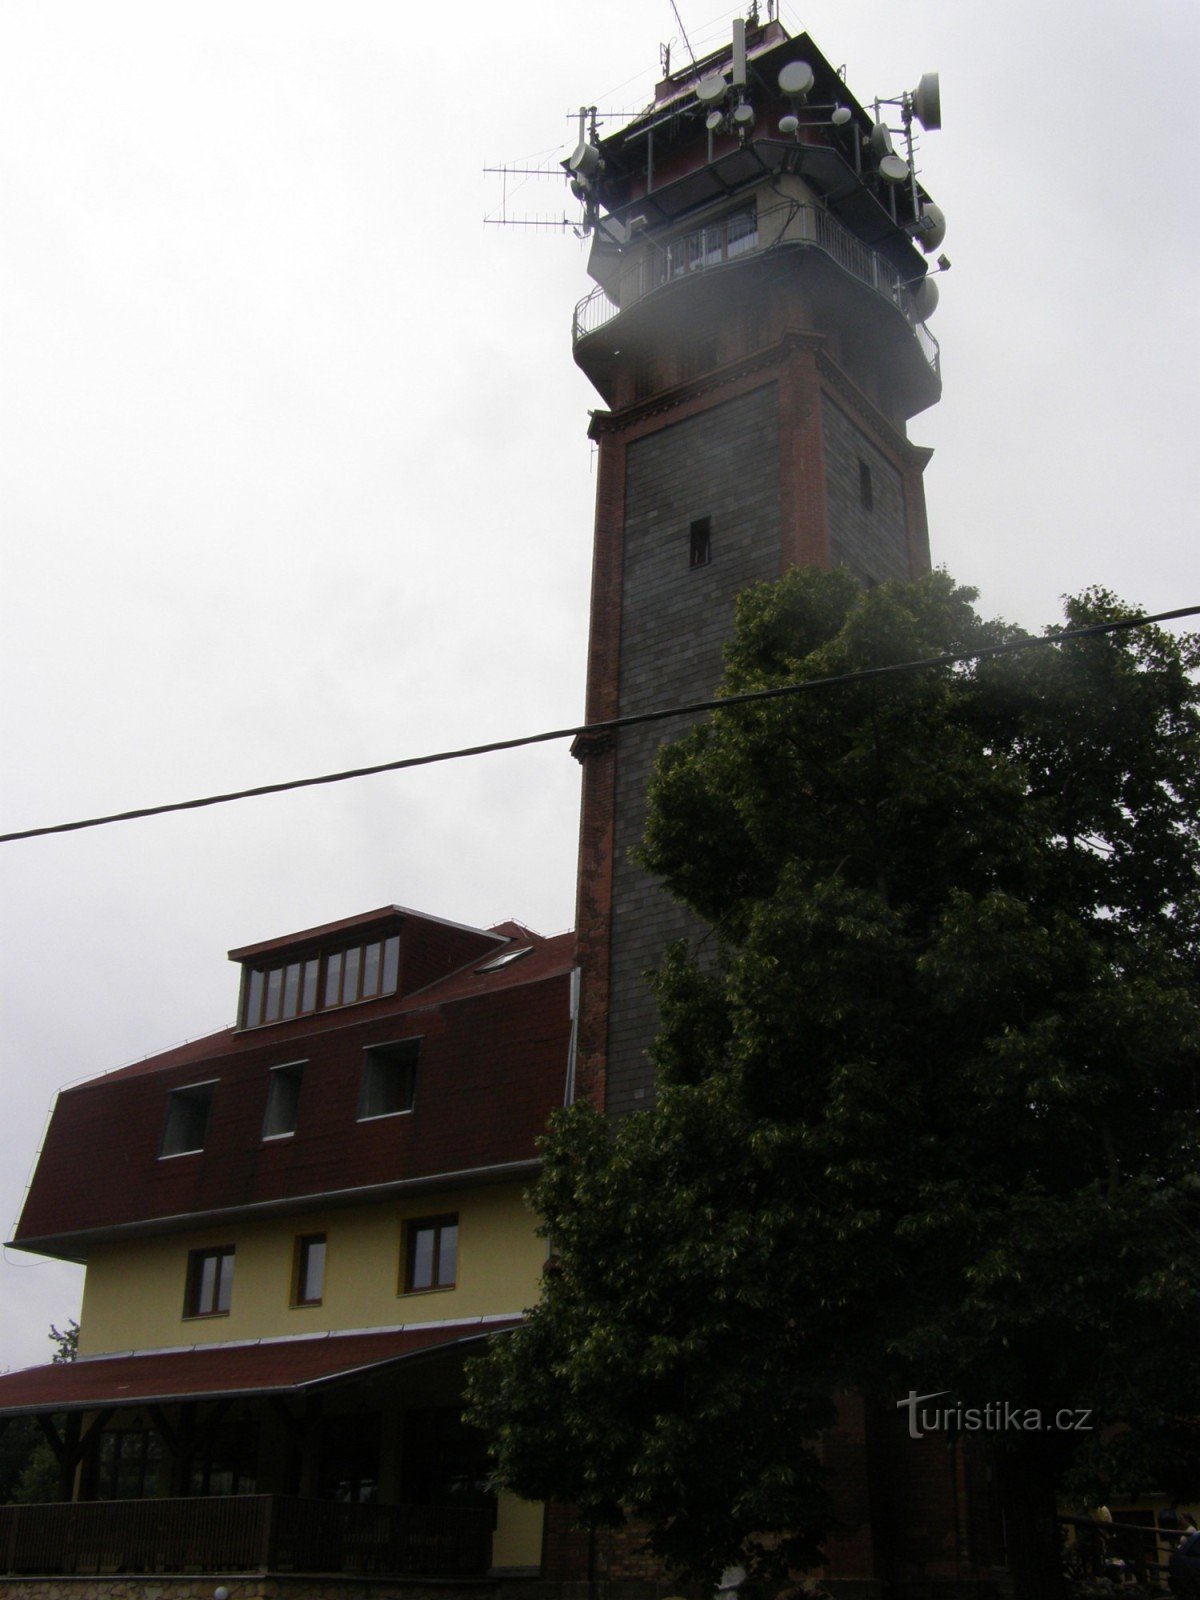 Tábor - Torre mirador de Tichánk